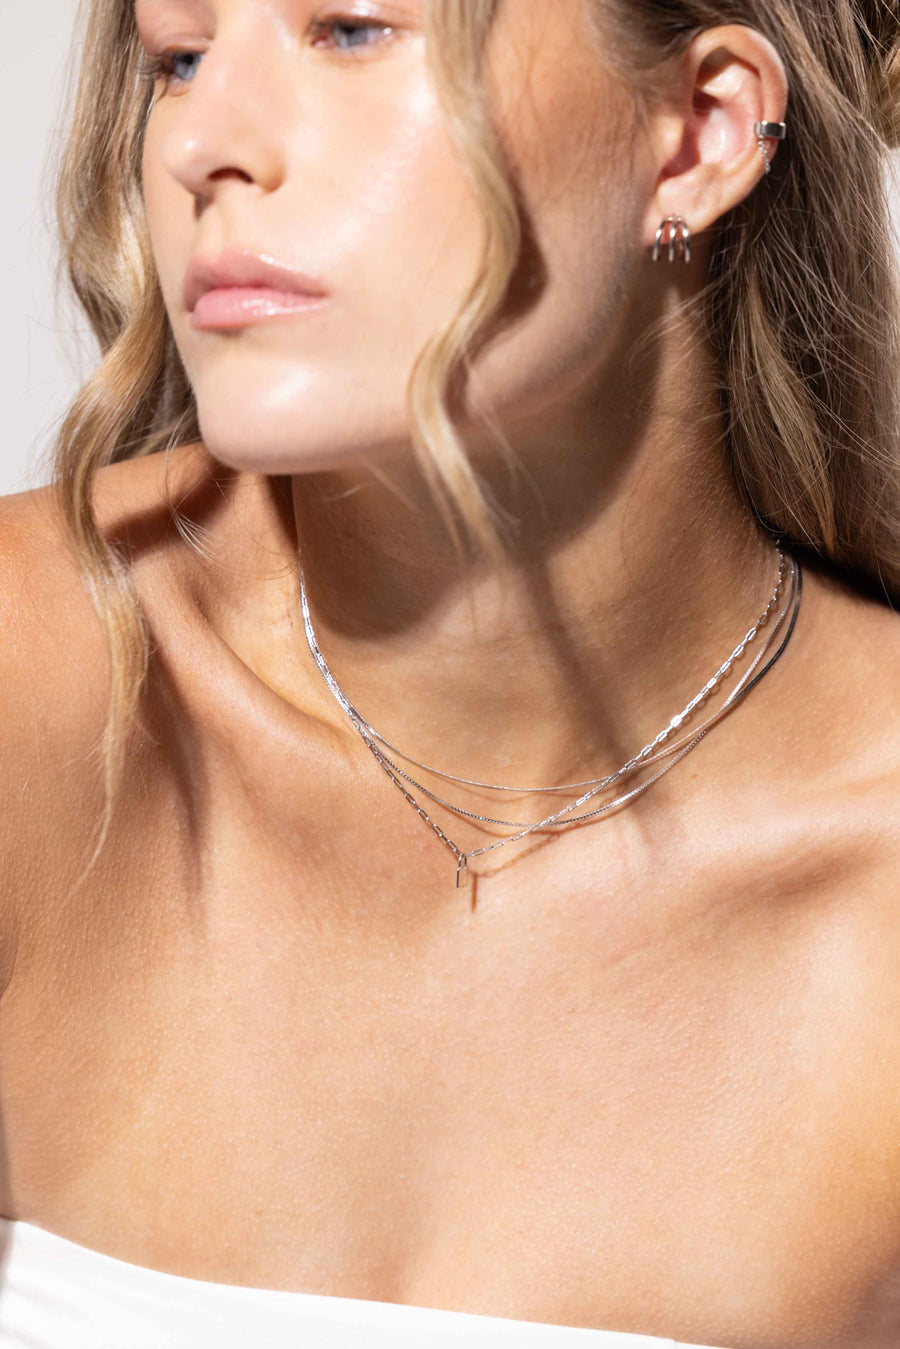 Barebone Three Layer Necklace Clasp - Silver – Barebone Apparel